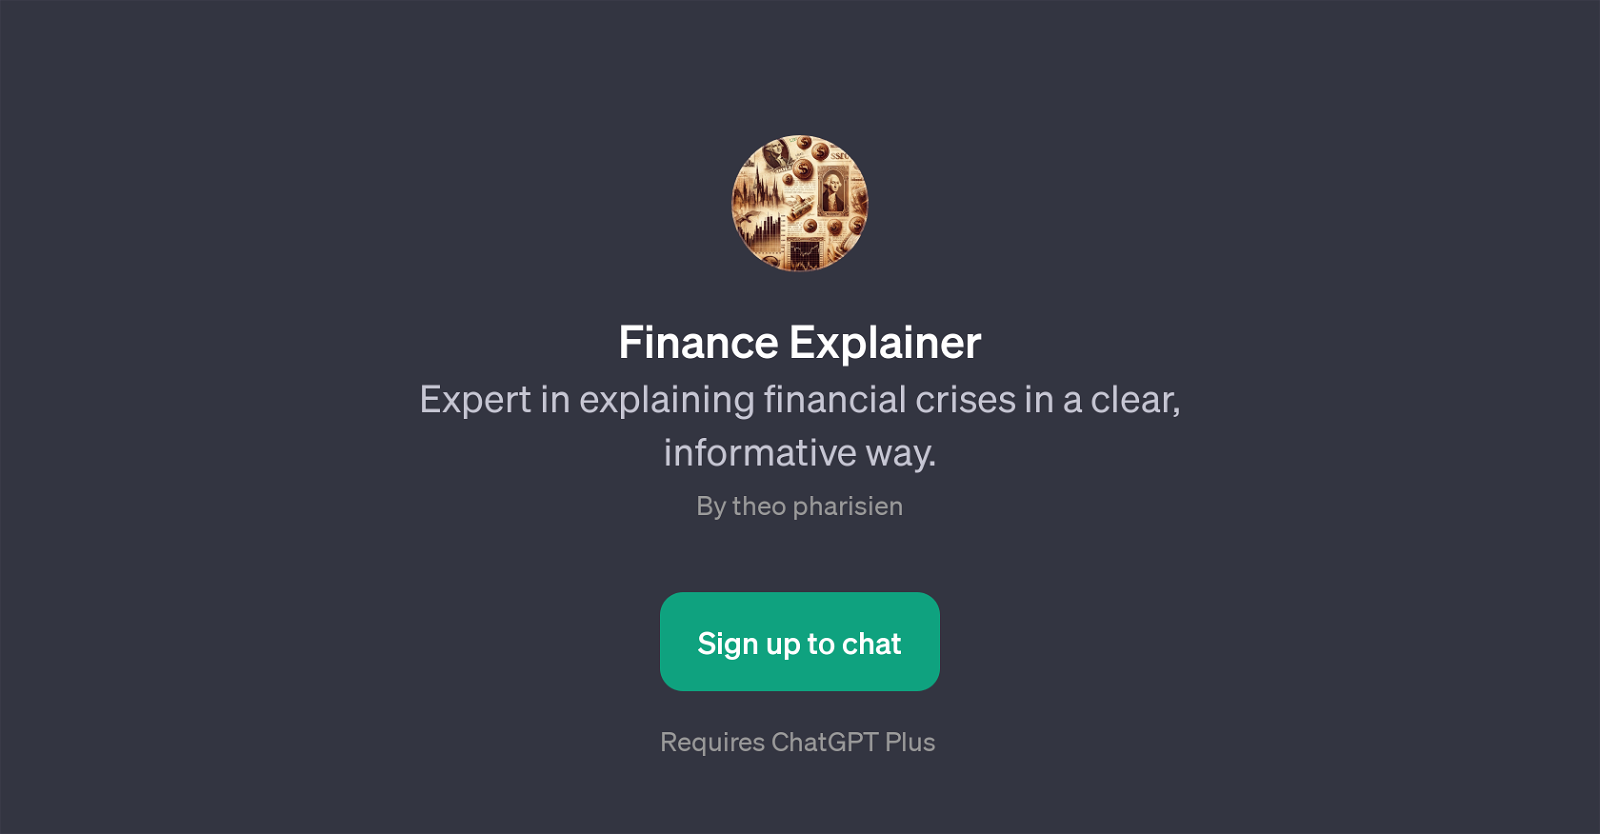 Finance Explainer website